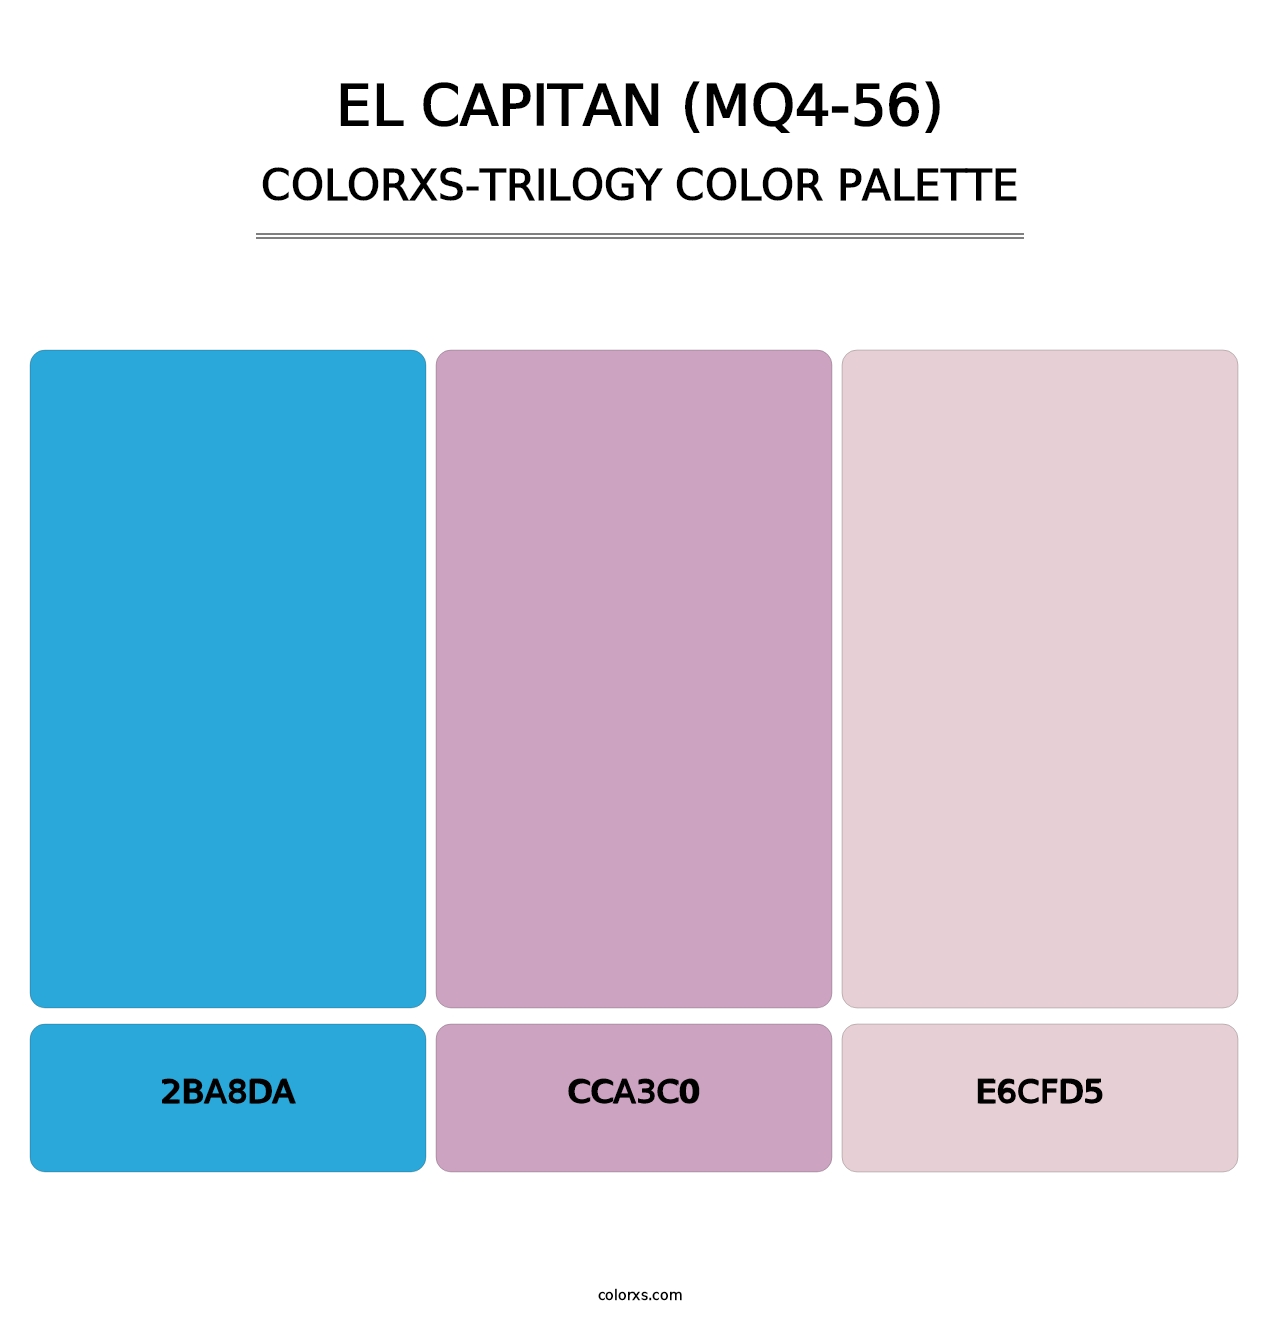 El Capitan (MQ4-56) - Colorxs Trilogy Palette